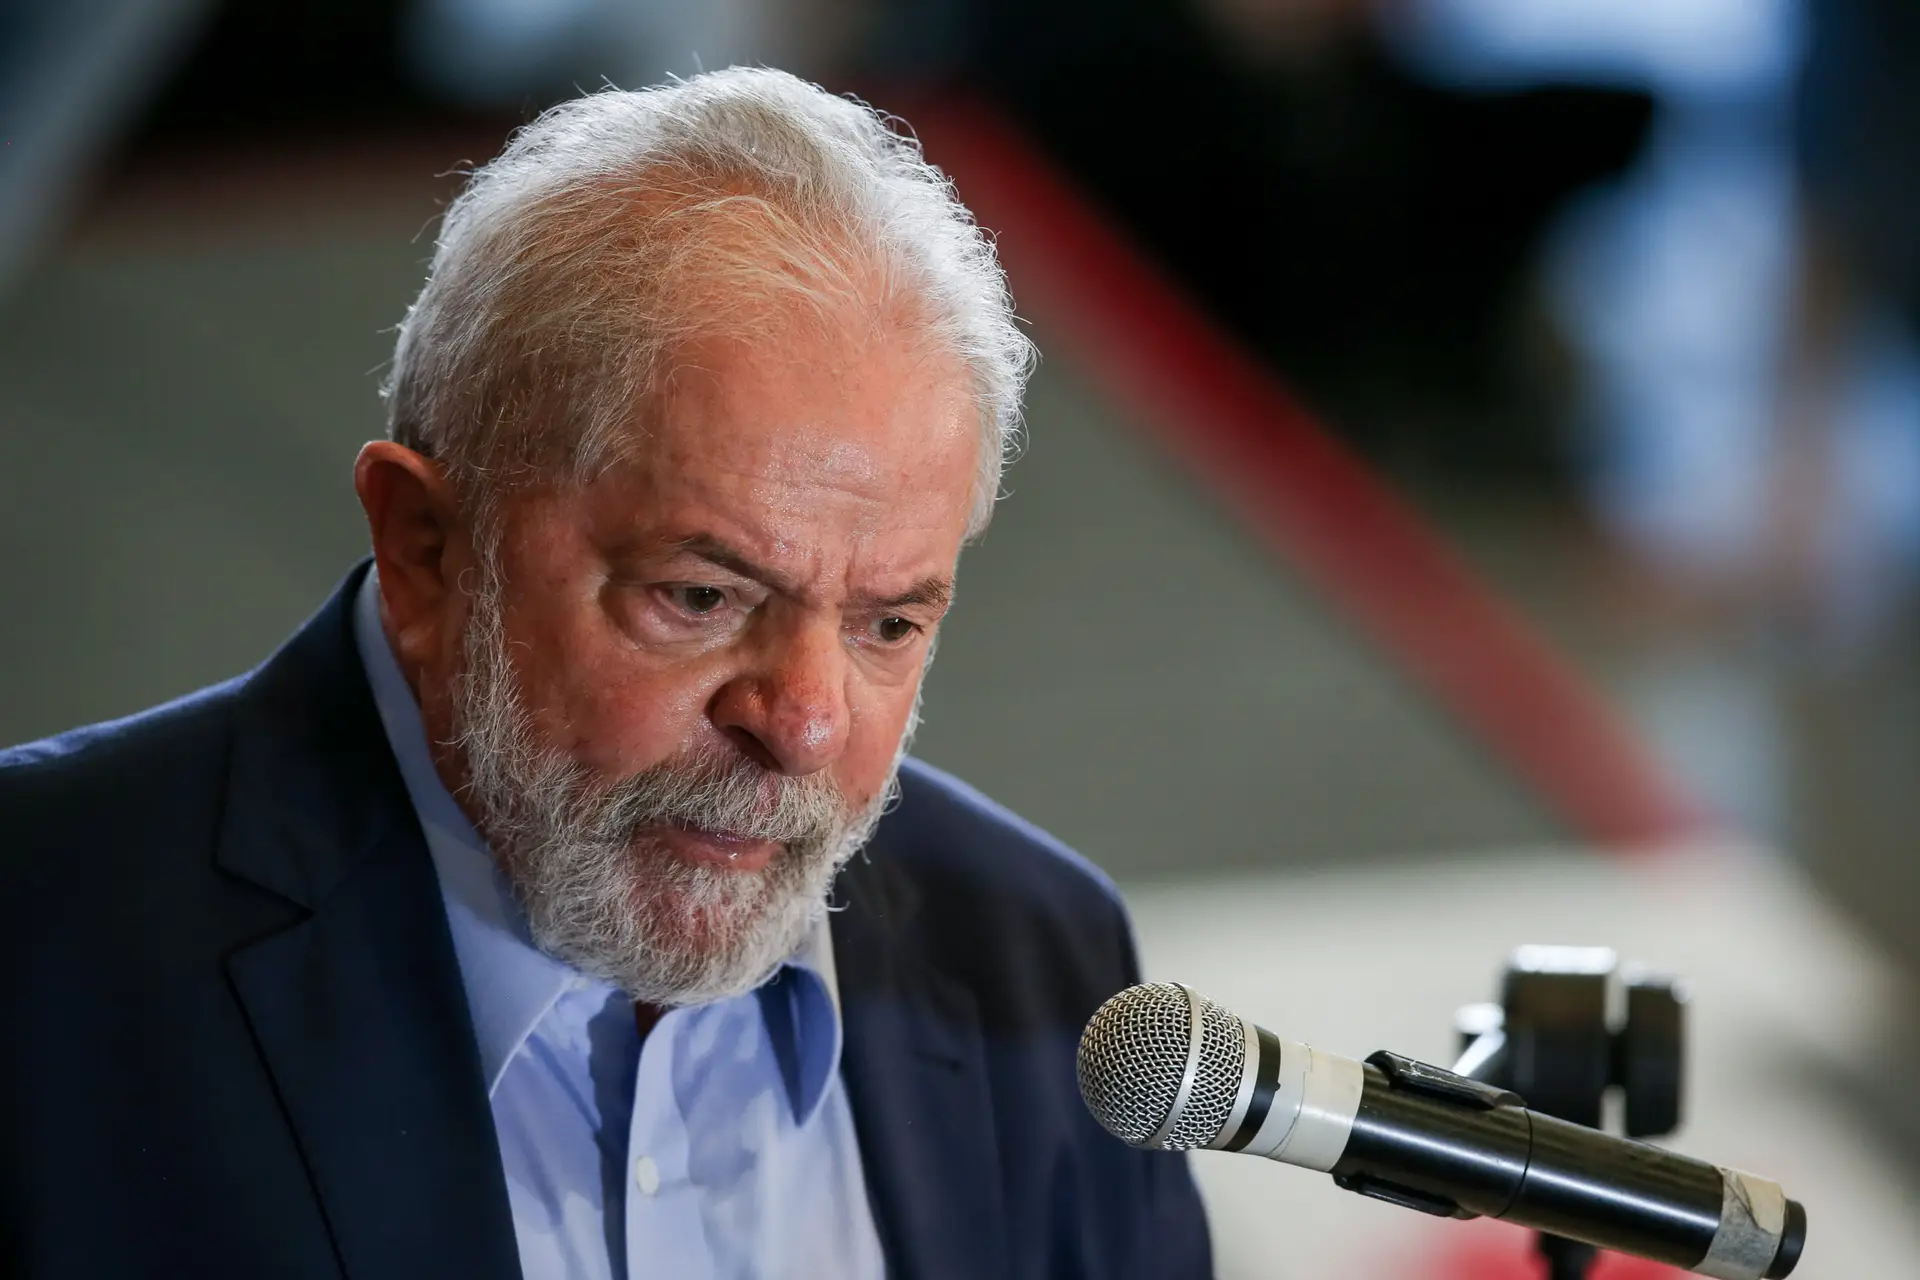 Legislativas: Lula da Silva felicita PS e António Costa por “grande vitória”